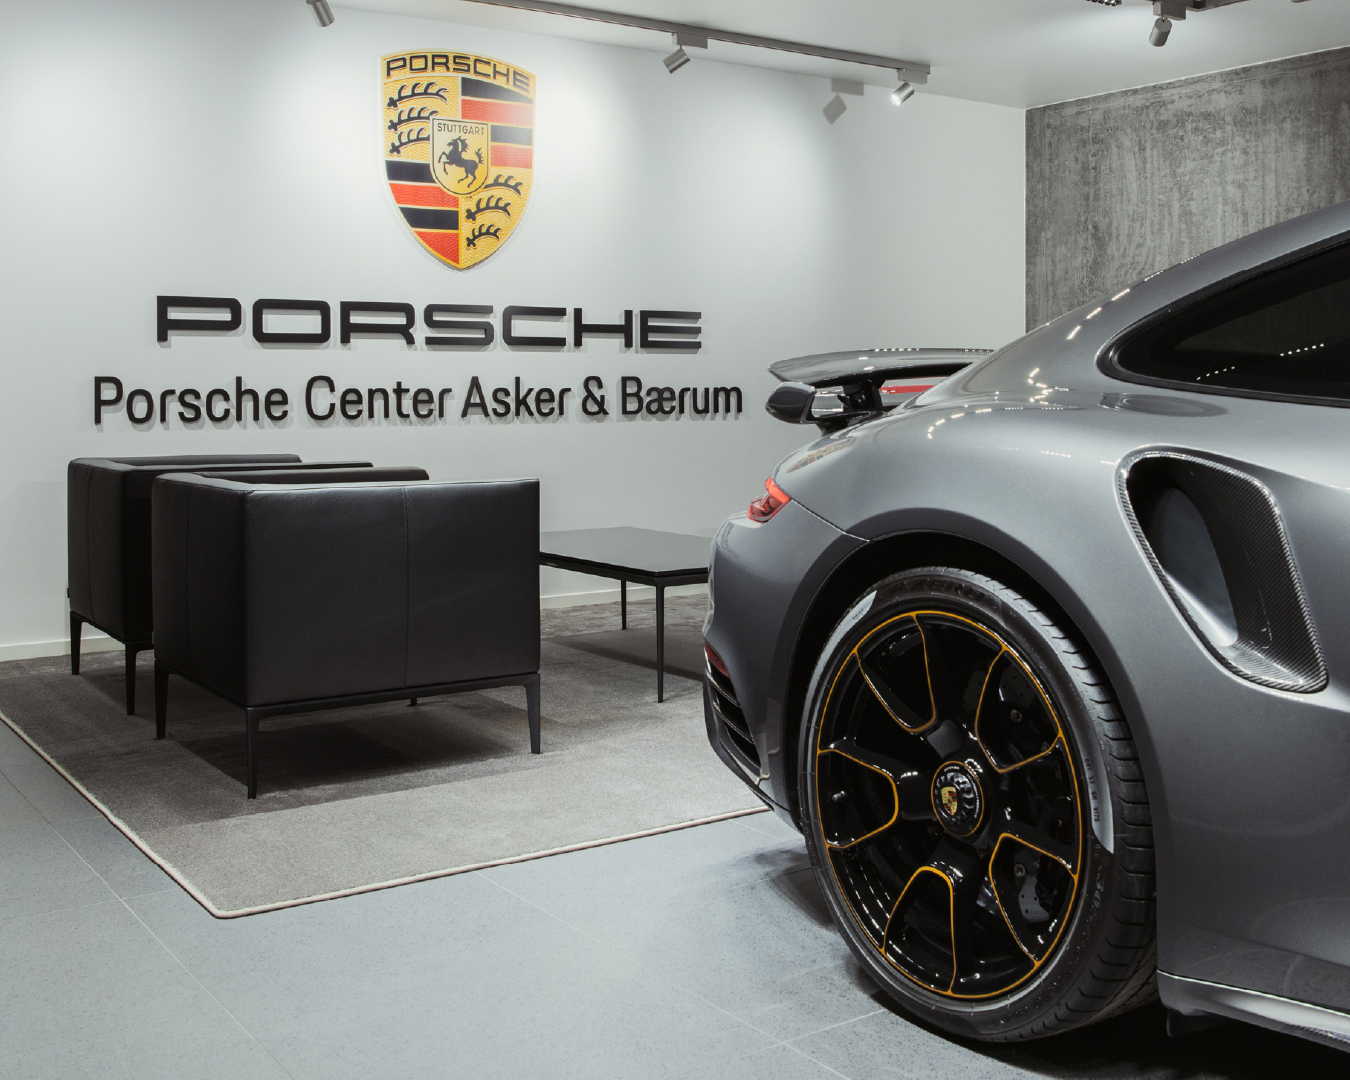 Frokostmøte og bedriftsbesøk til Porsche Center Asker & Bærum